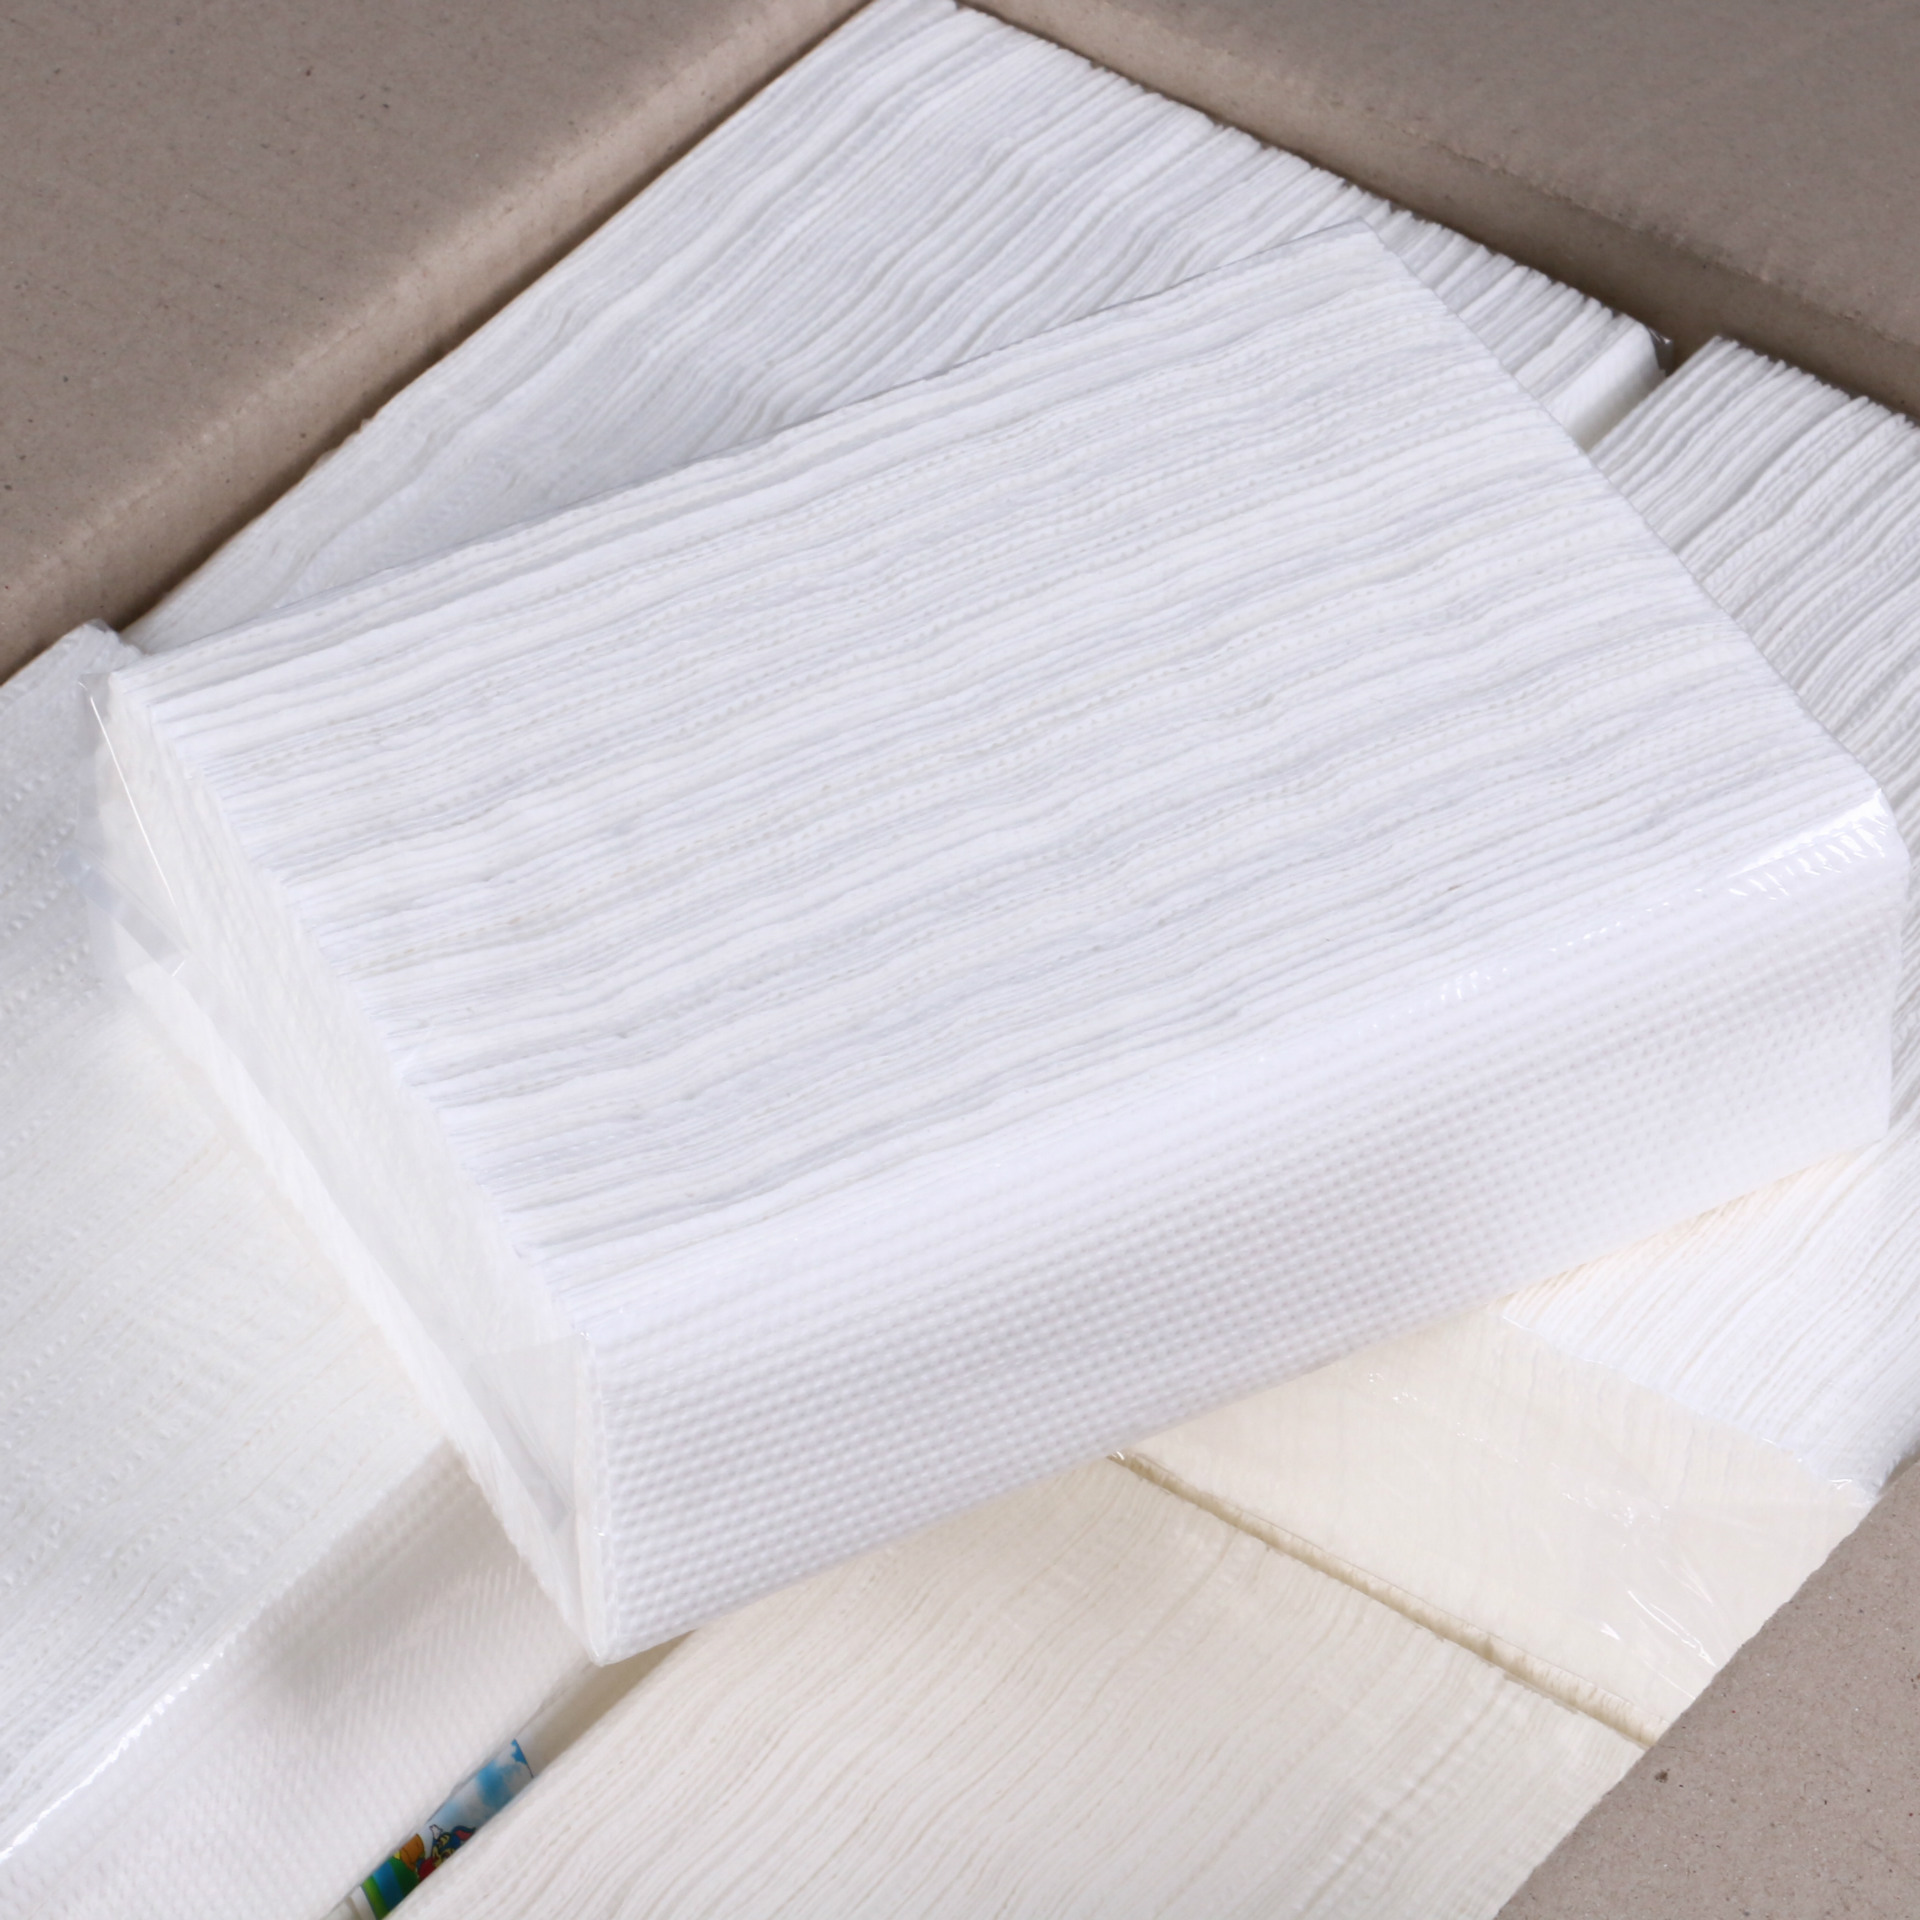 批发加厚三折擦手纸130抽厨房吸油用纸抽纸酒店厕所卫生纸 包邮